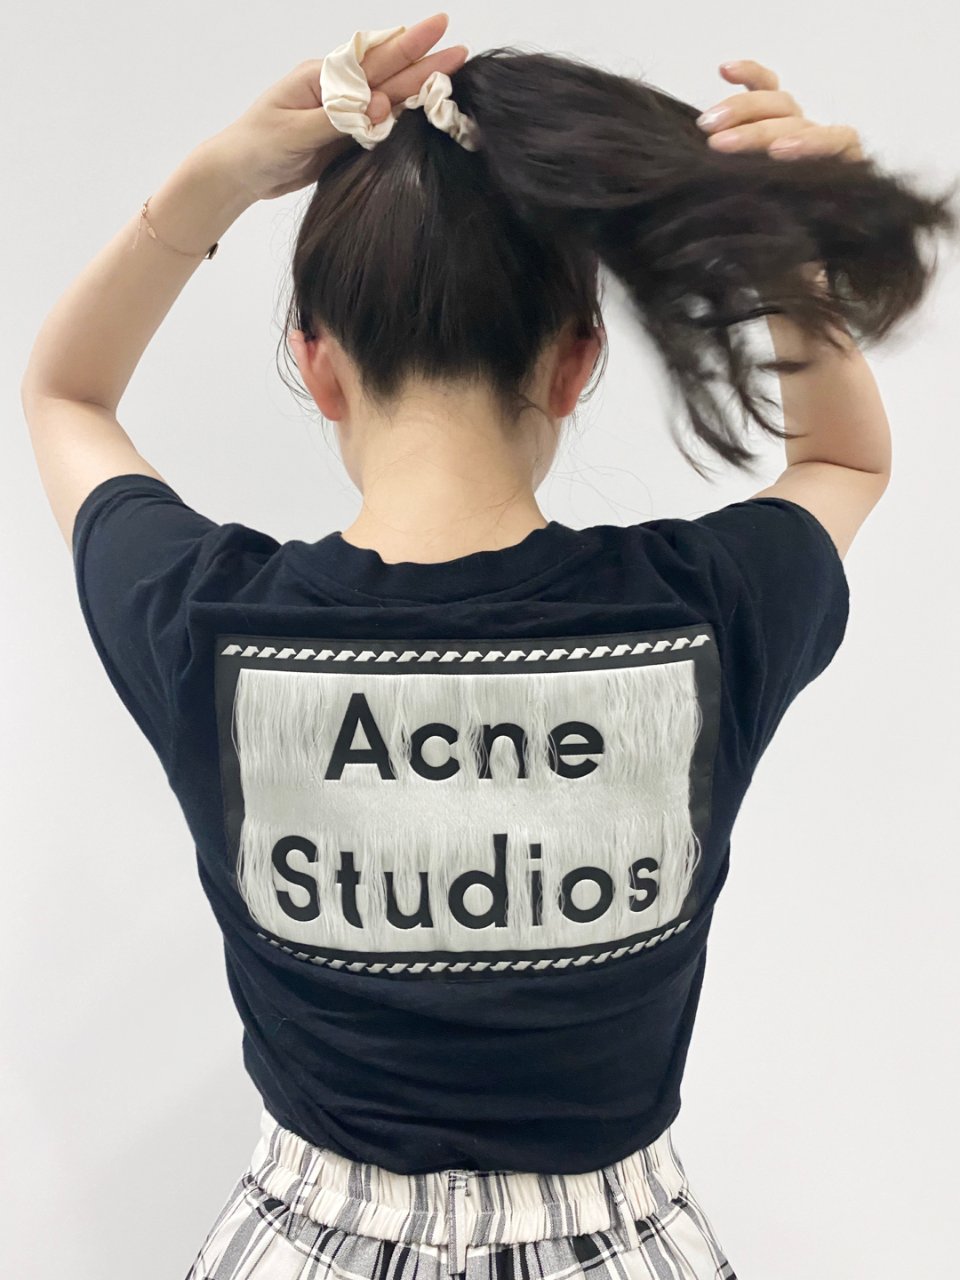 Acne Studios,Shopbop